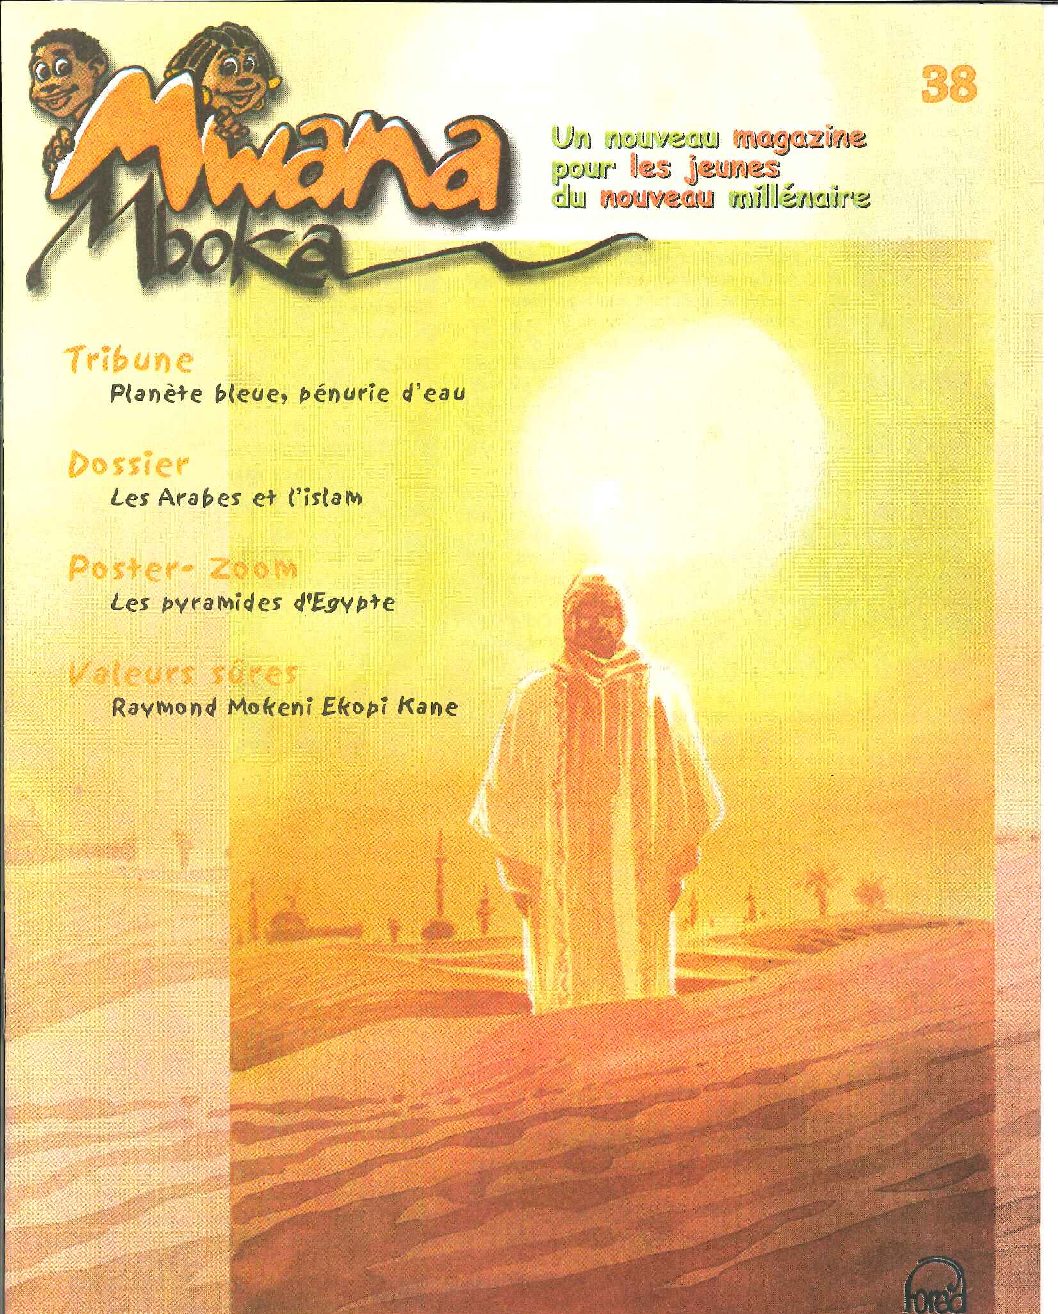 Mwana magazine